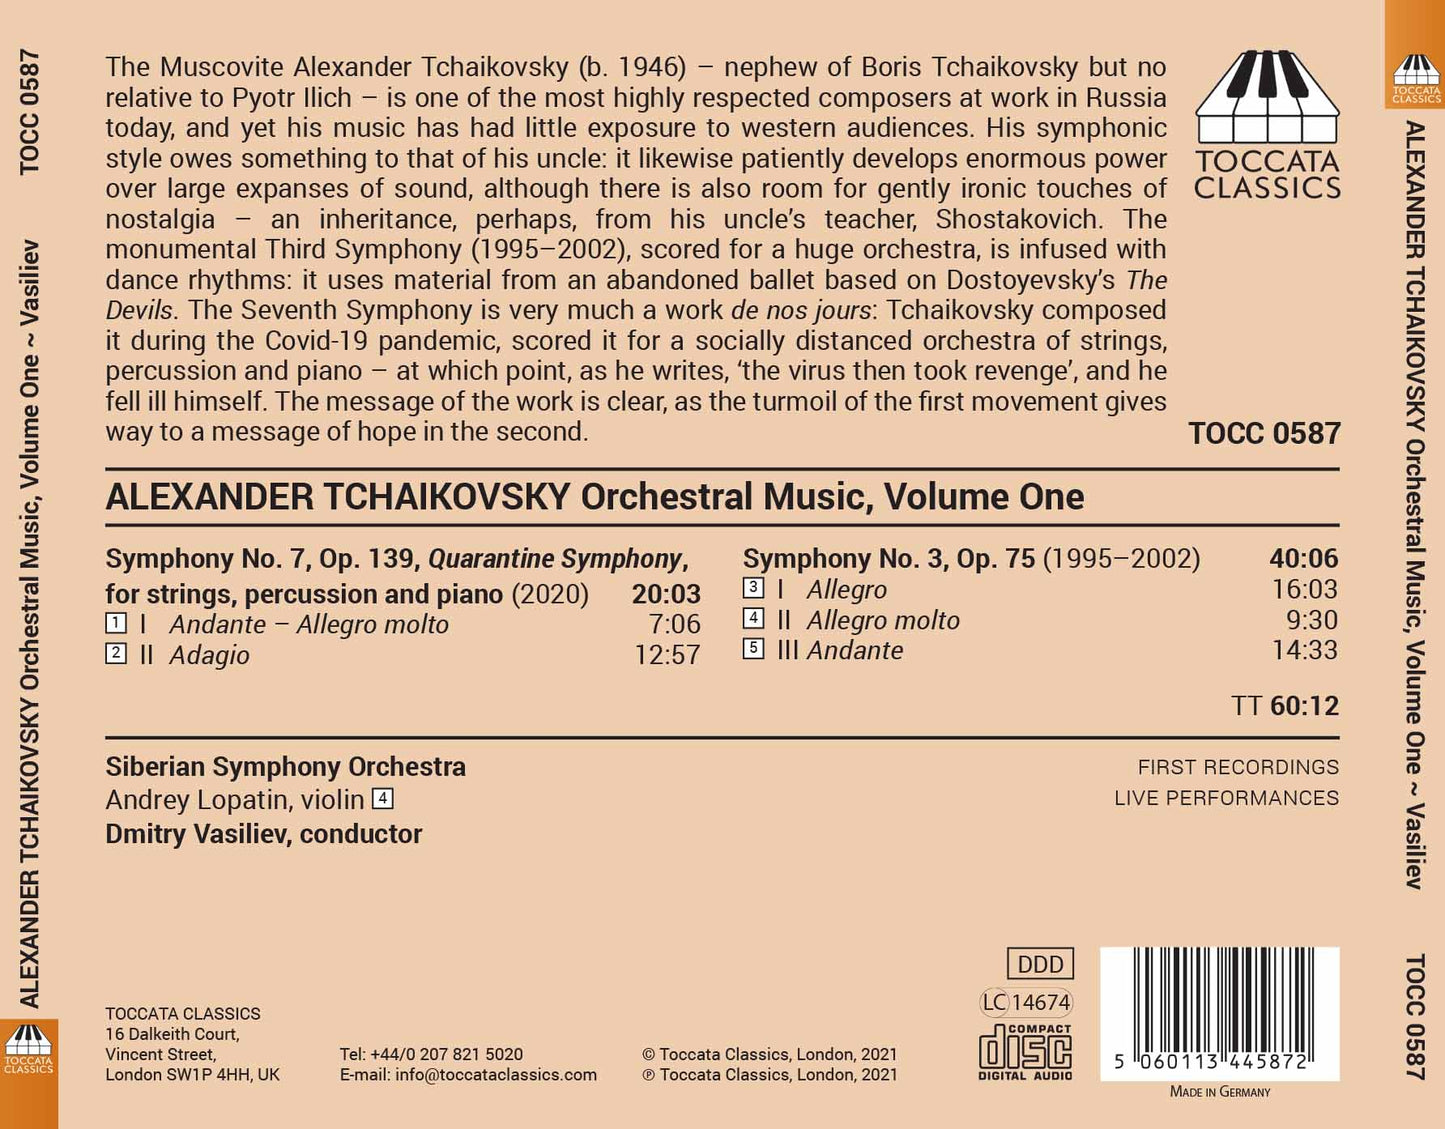 Alexander Tchaikovsky: Orchestral Music Volume One